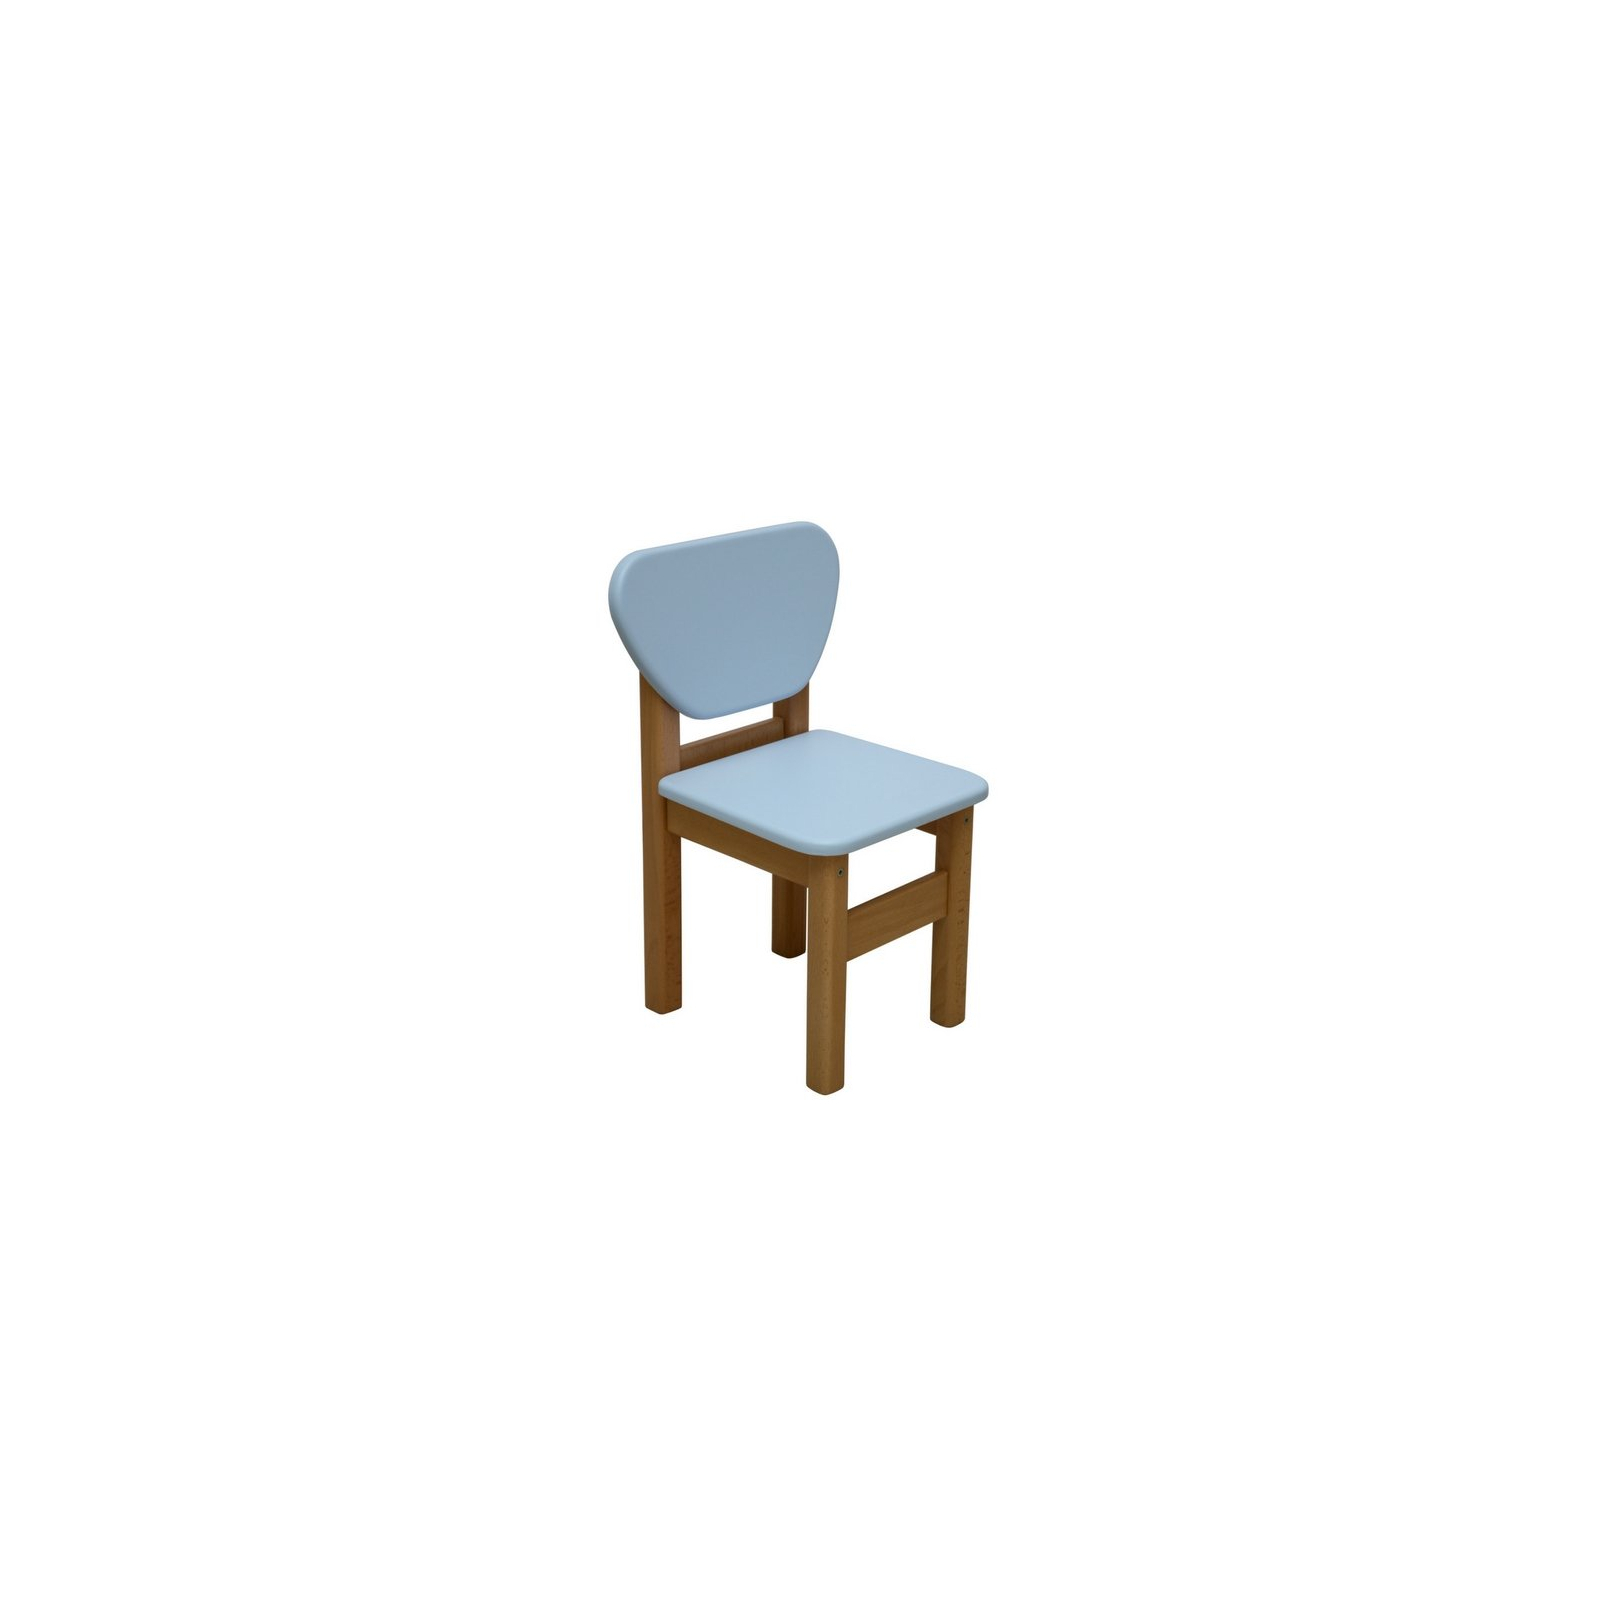 Дитячий стілець Верес МДФ Голубой (30.2.16)